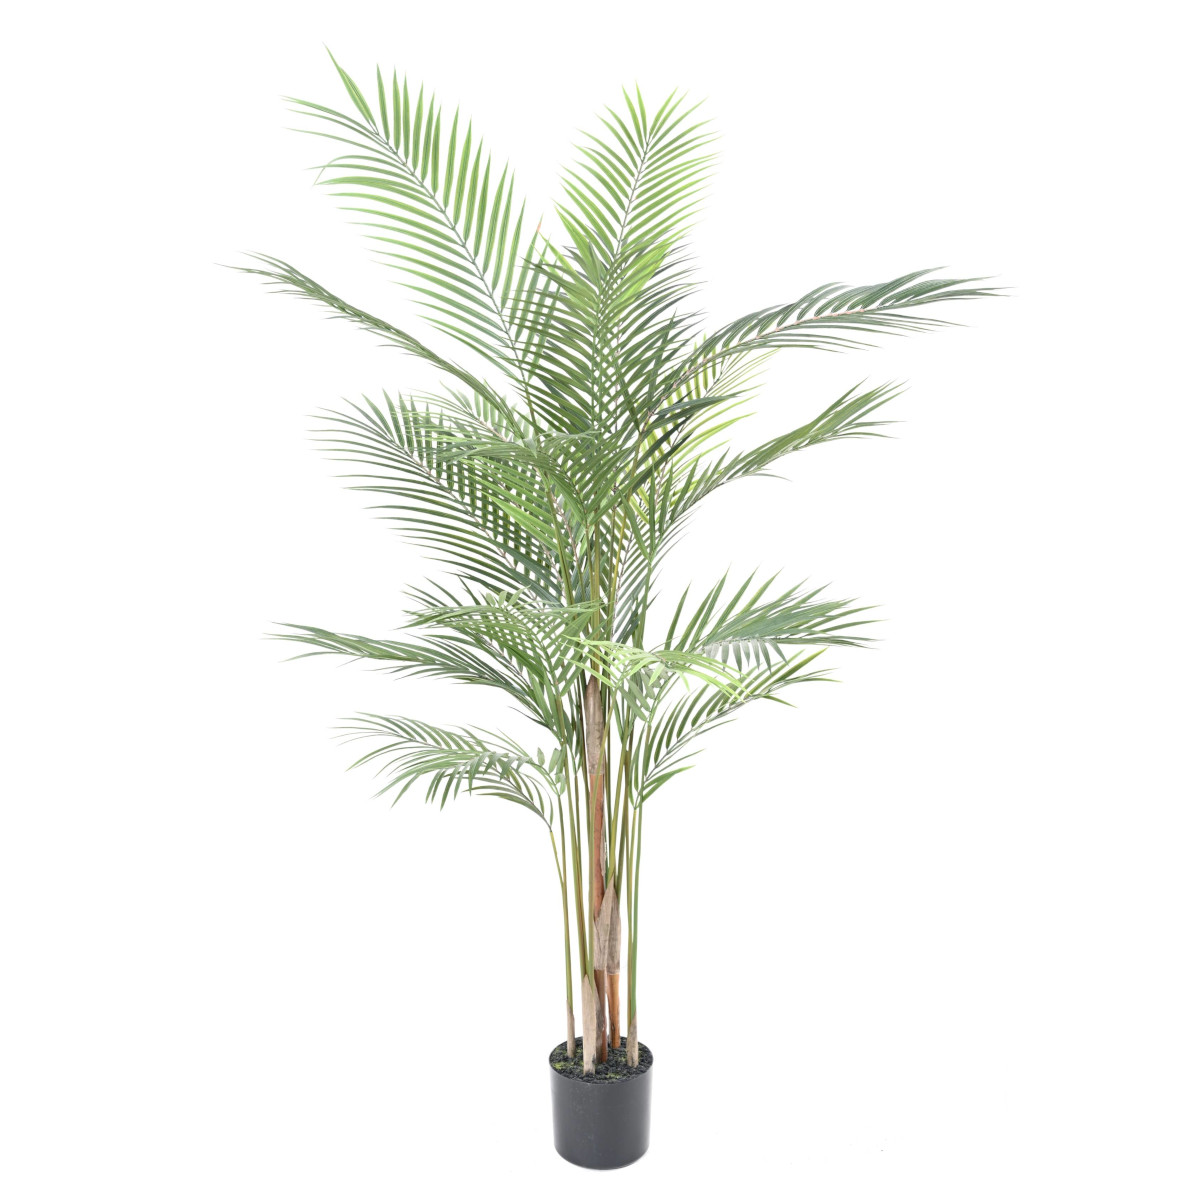 Palmier "Areca" artificiel ht. 120 cm